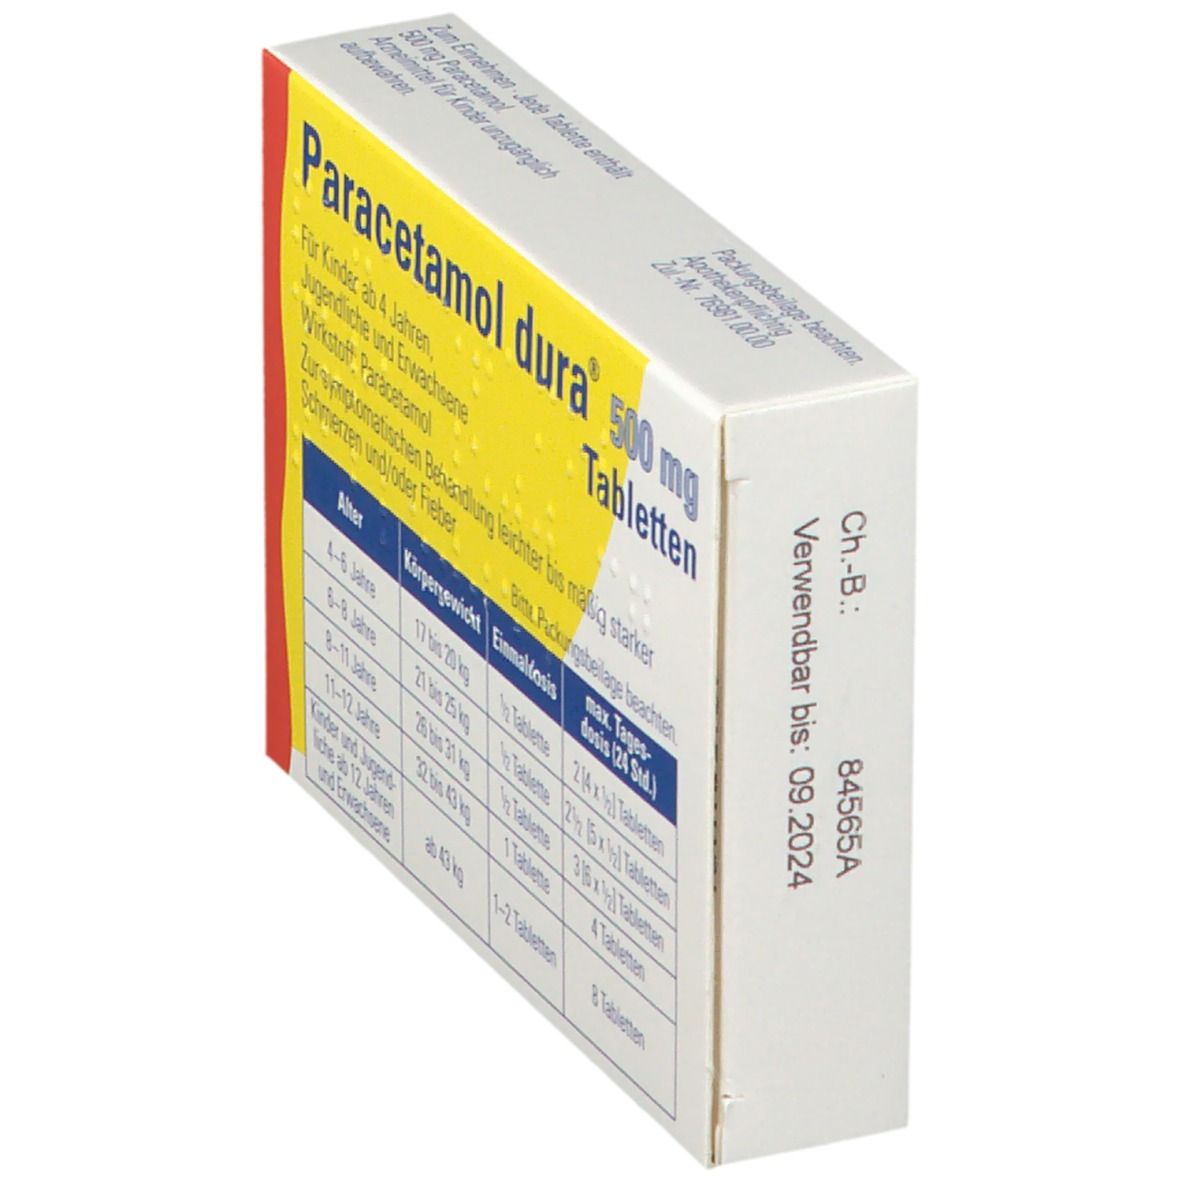 Paracetamol dura® 500 mg Tabletten